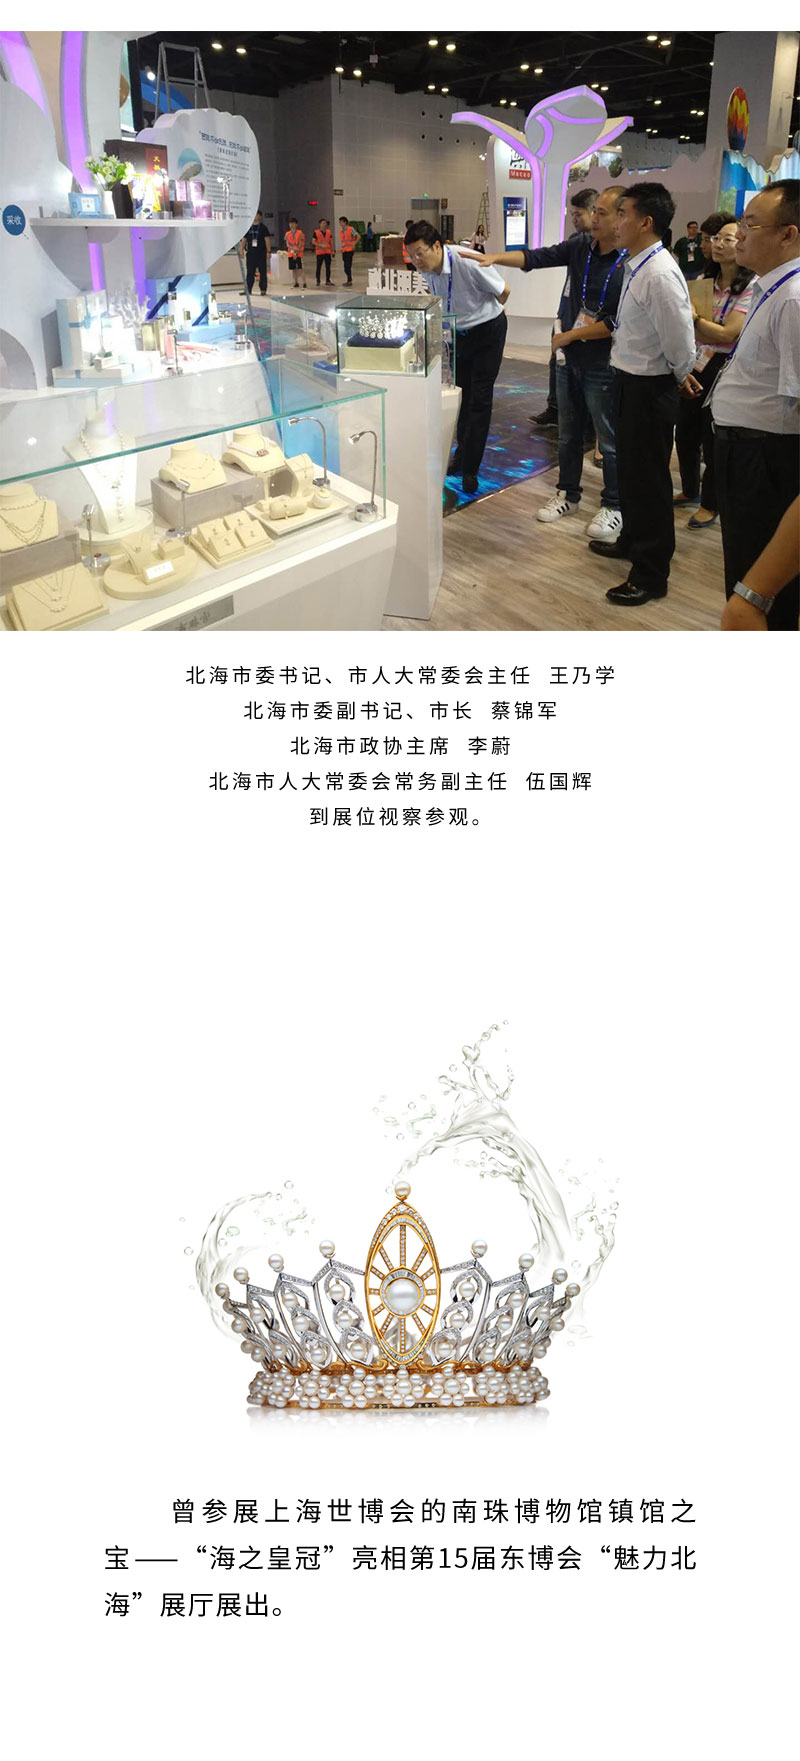 南珠宫展品亮相第十五届中国-东盟博览会-拷贝_03.jpg